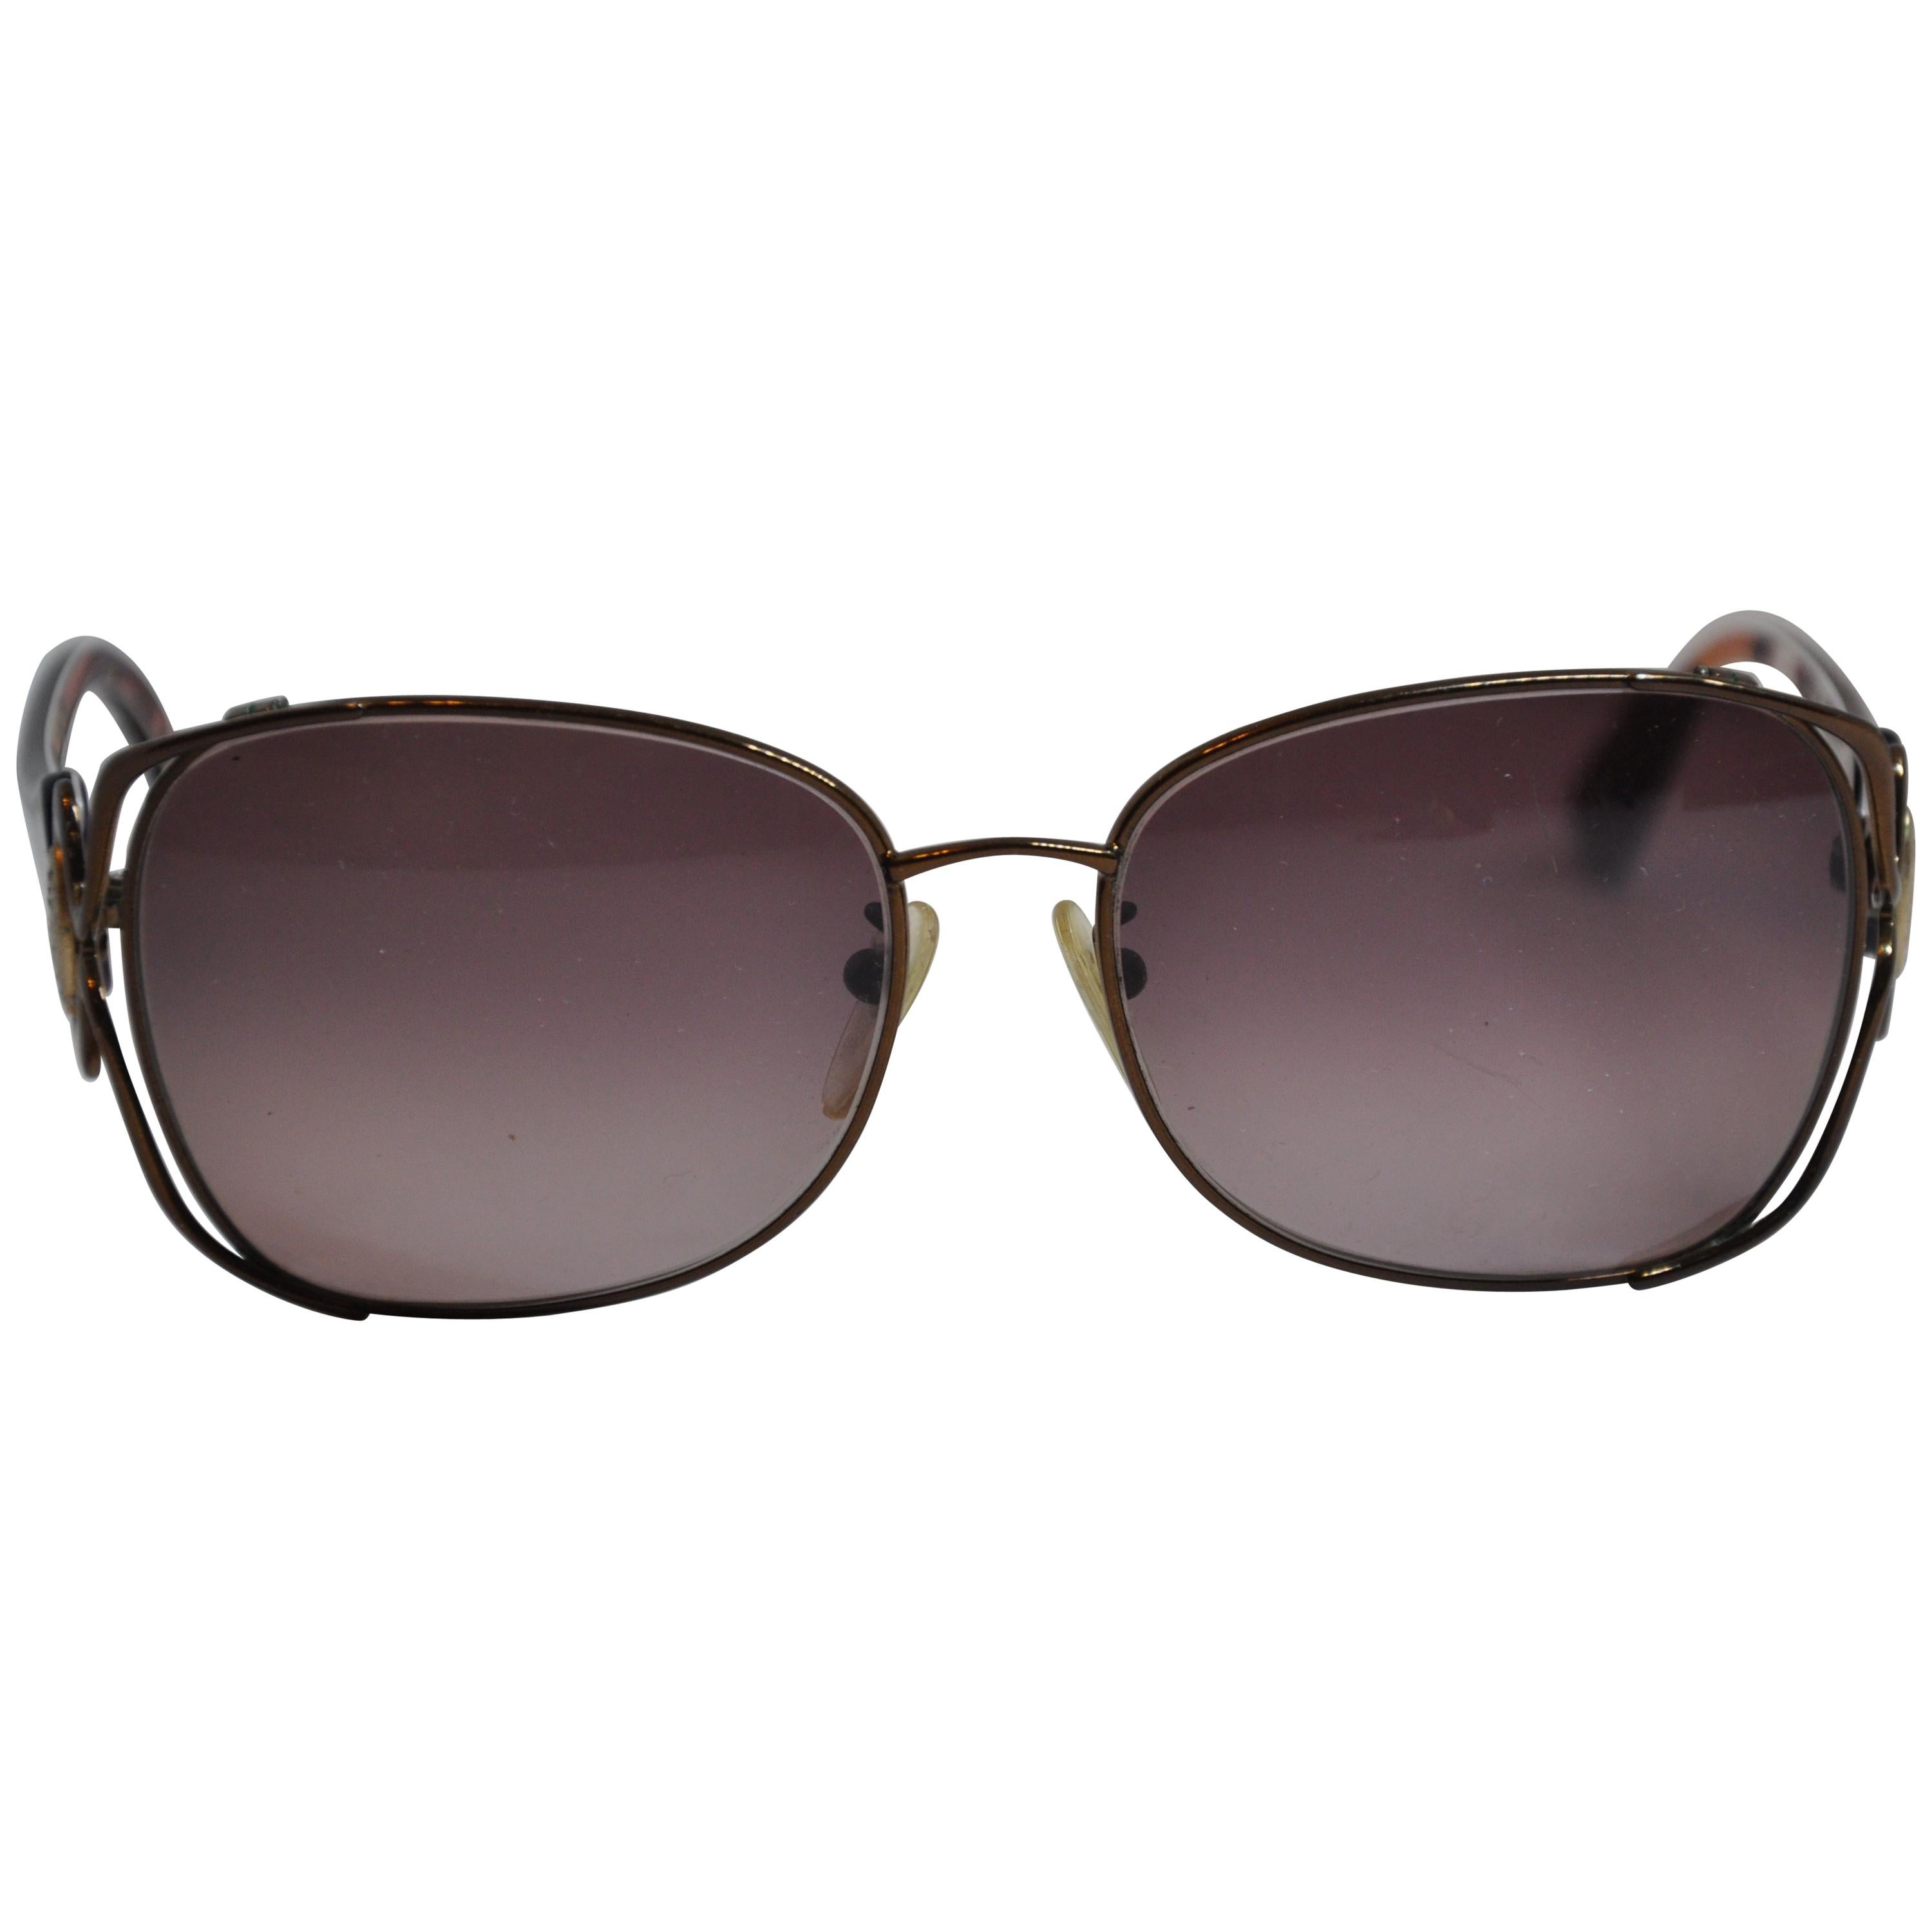 Emilio Pucci Tortoise Shell & Bronze "Swirls" Prescription Sunglasses